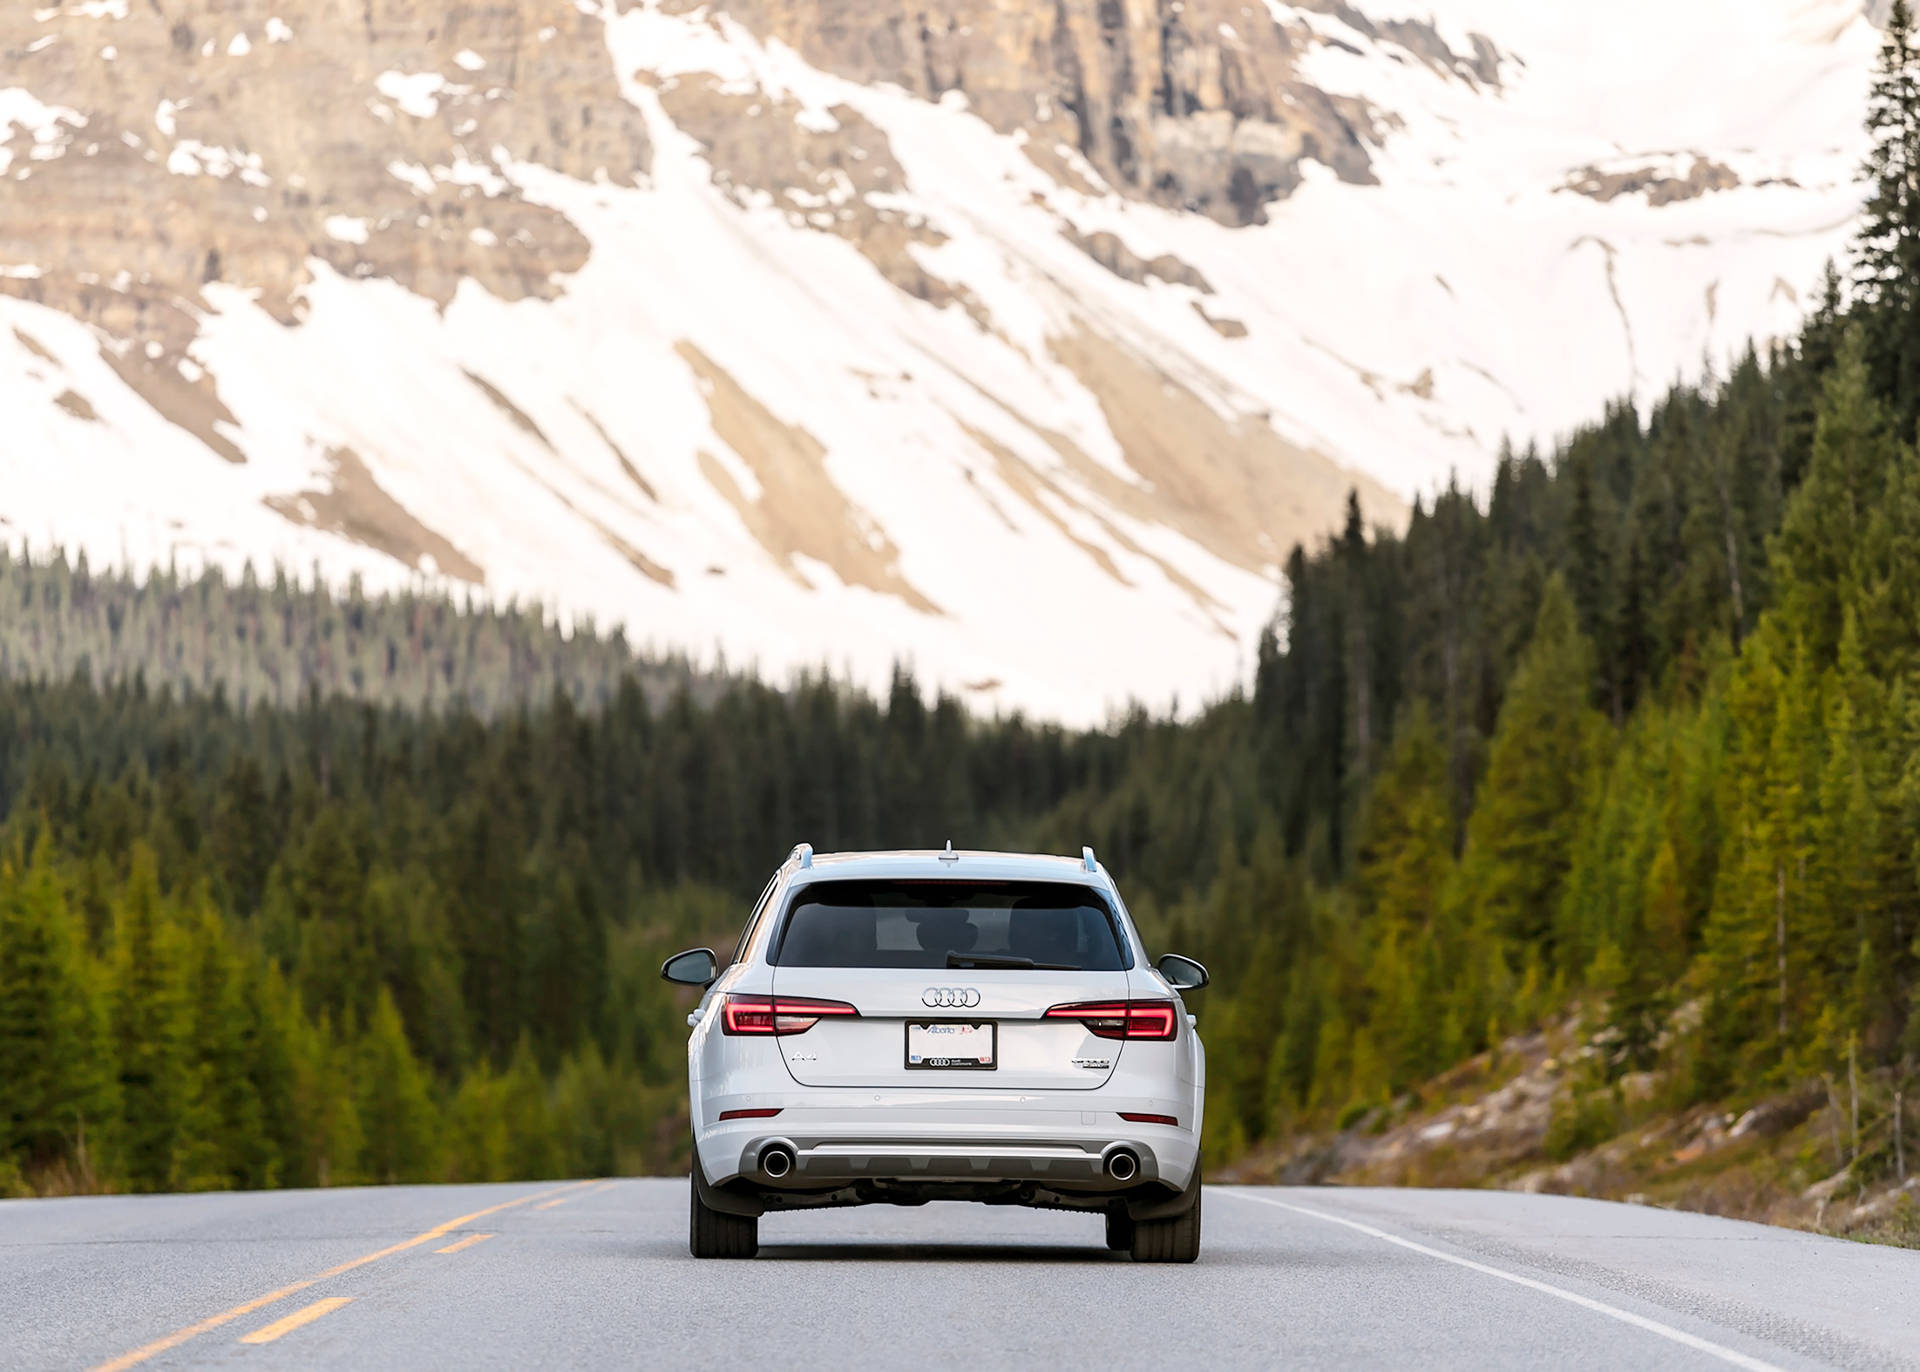 Audi A4 Rear View Landscape Background